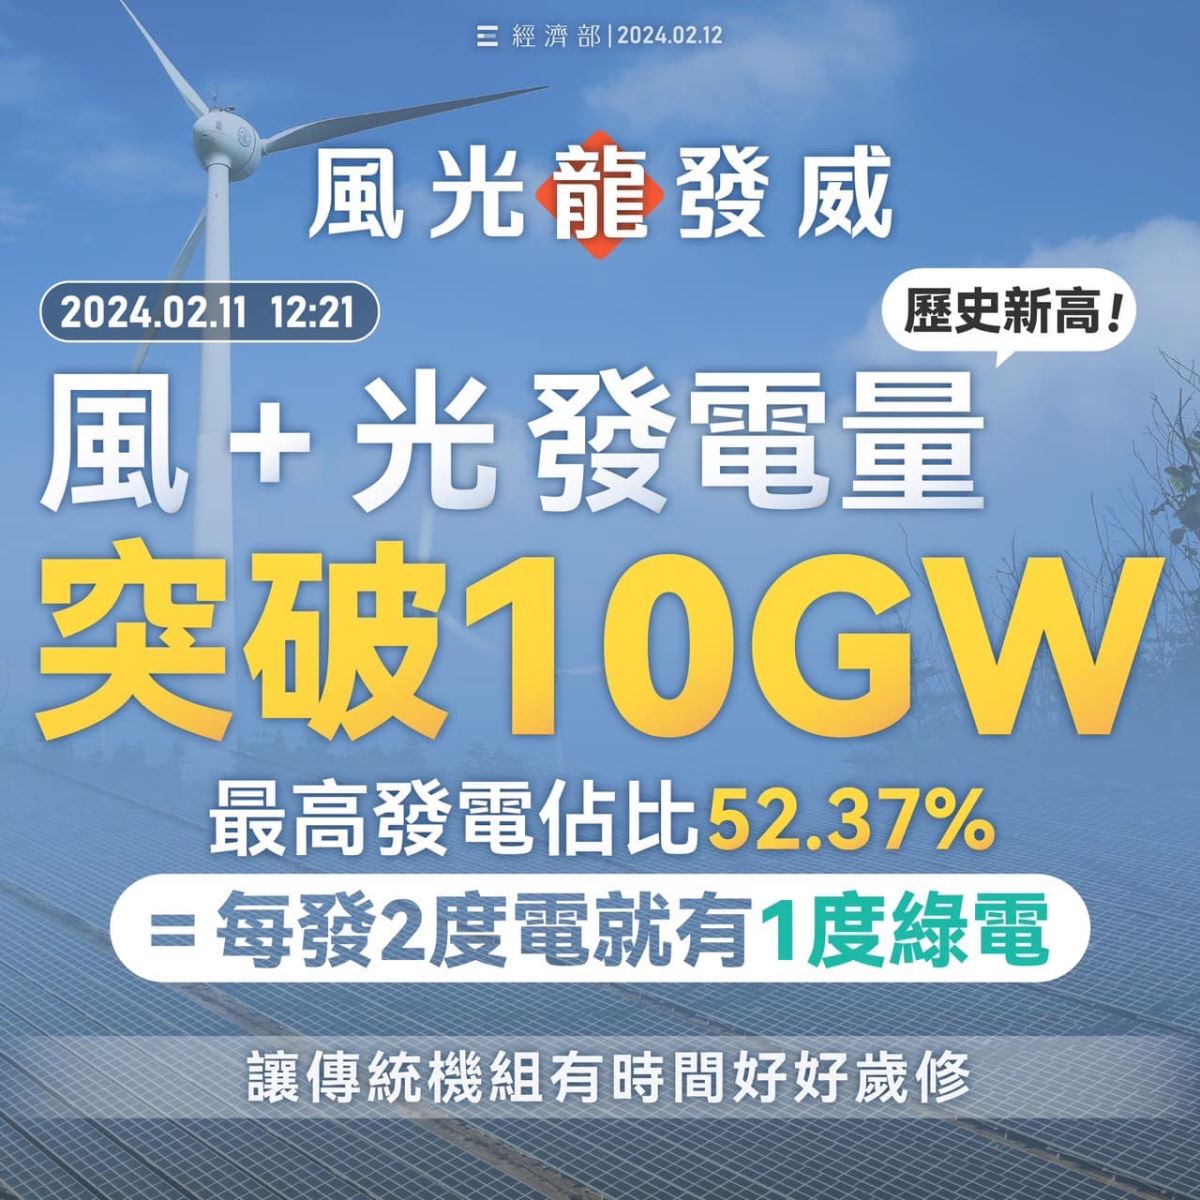 年初二風光最高發電量達10GW